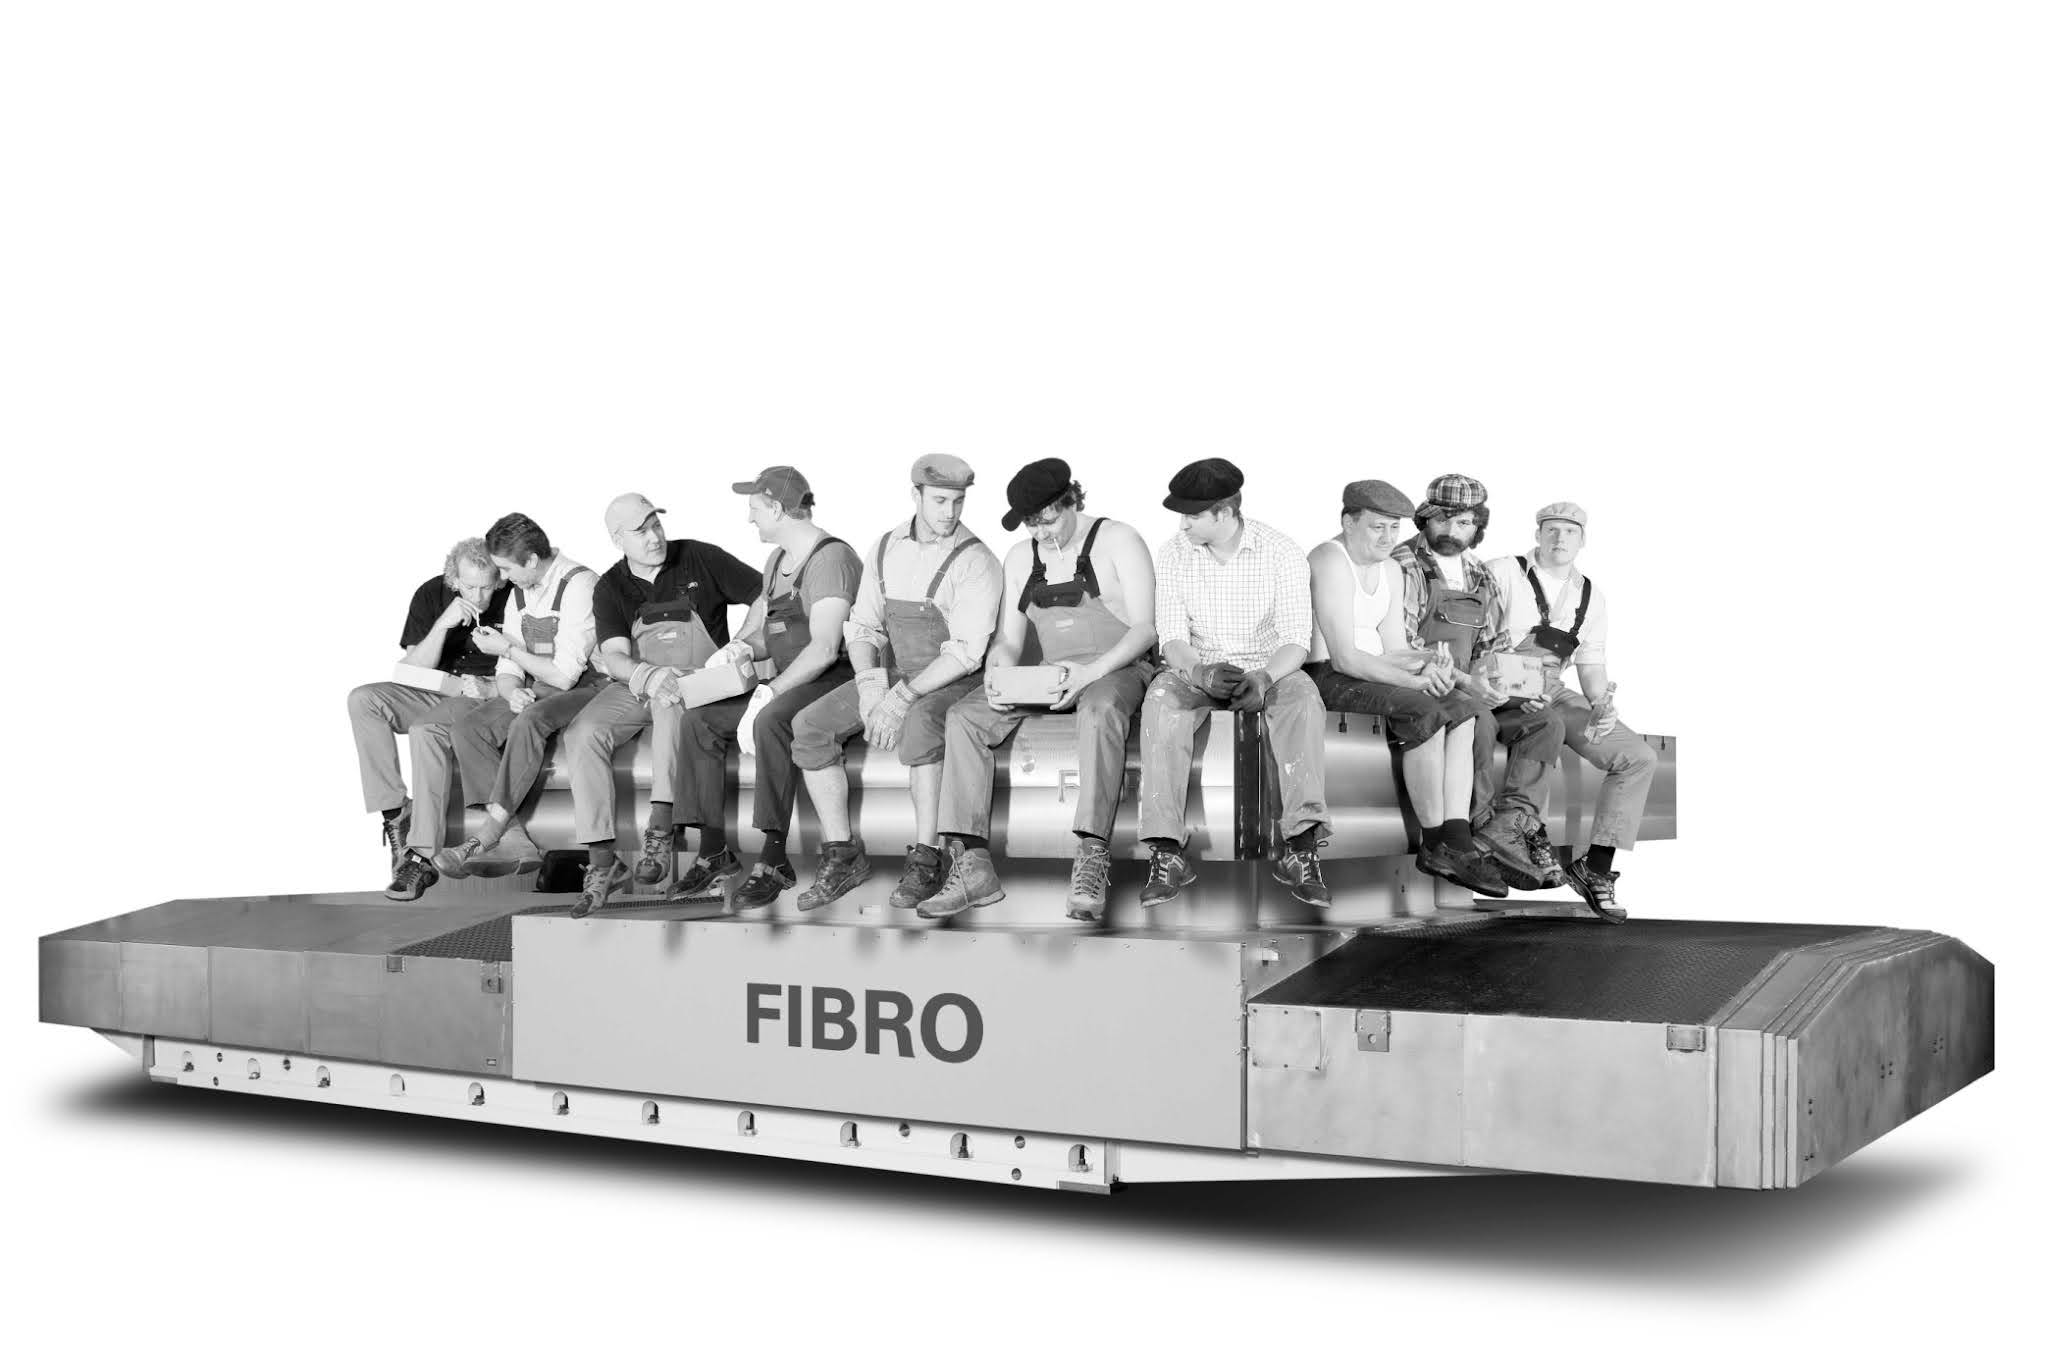 FIBRO Team sitzt auf dem FIBROMAX im Stile des bekannten Bildes 'Mittagspause auf einem Wolkenkratzer' von Charles Clyde Ebbets